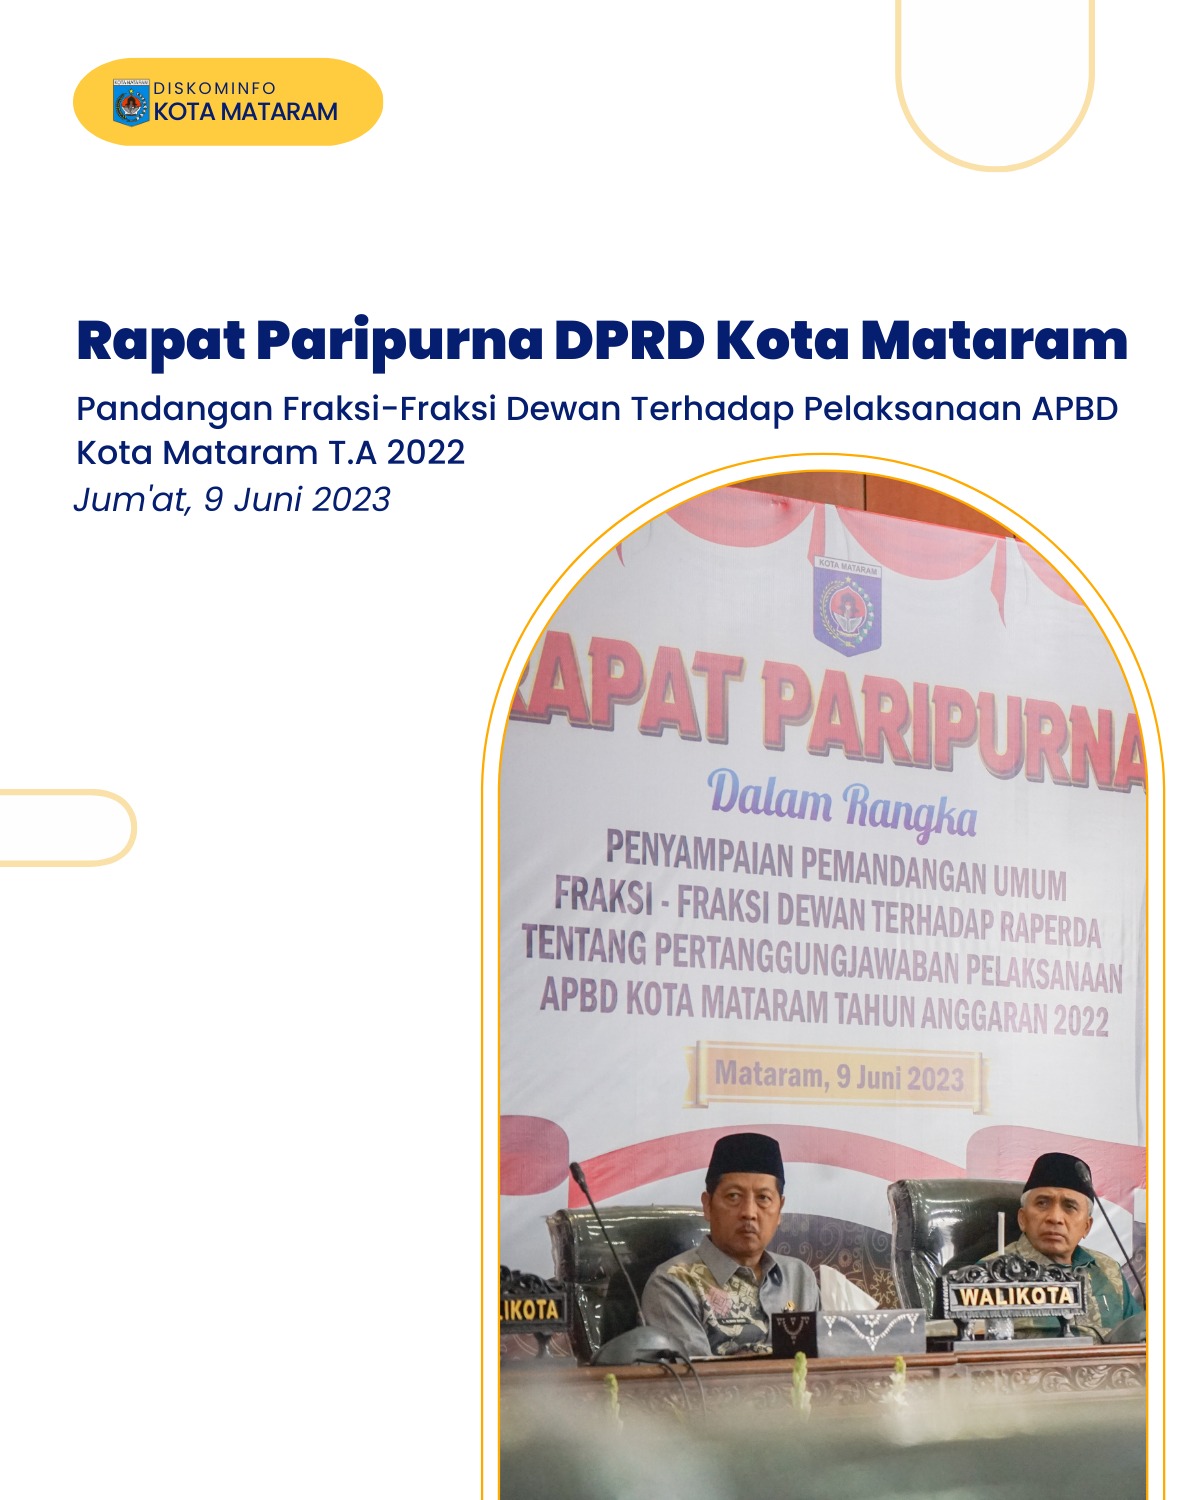 Pandangan Fraksi-Fraksi Dewan Terhadap Pelaksanaan APBD Kota Mataram T.A 2022